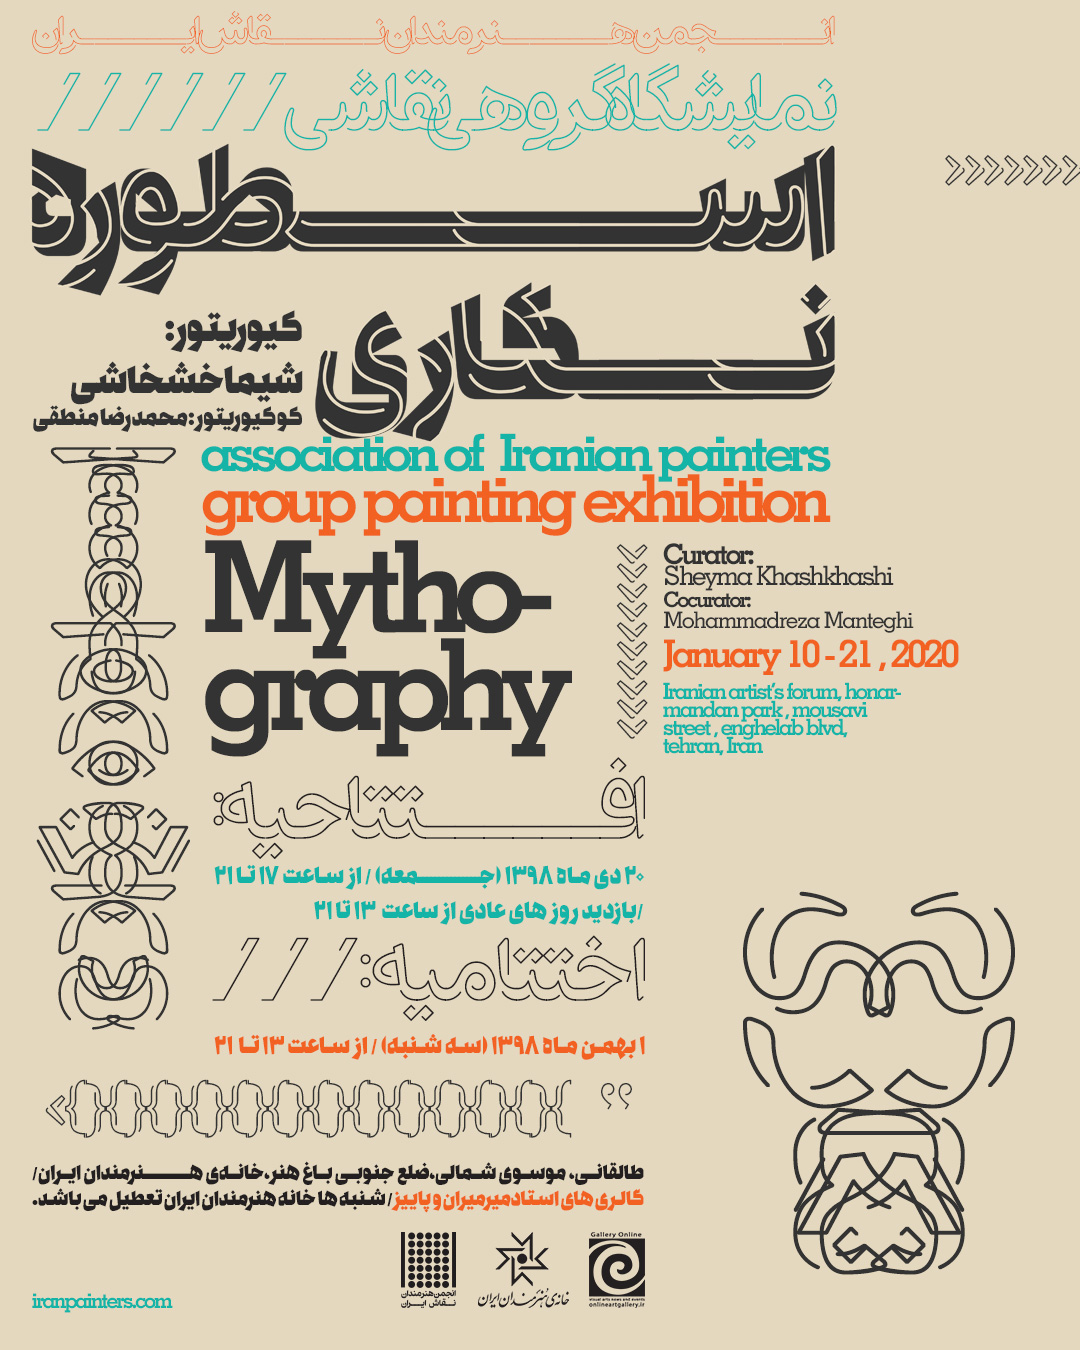 حامی رسانه ای نمایشگاه "اسطوره نگاری" در خانه هنرمندان ایران